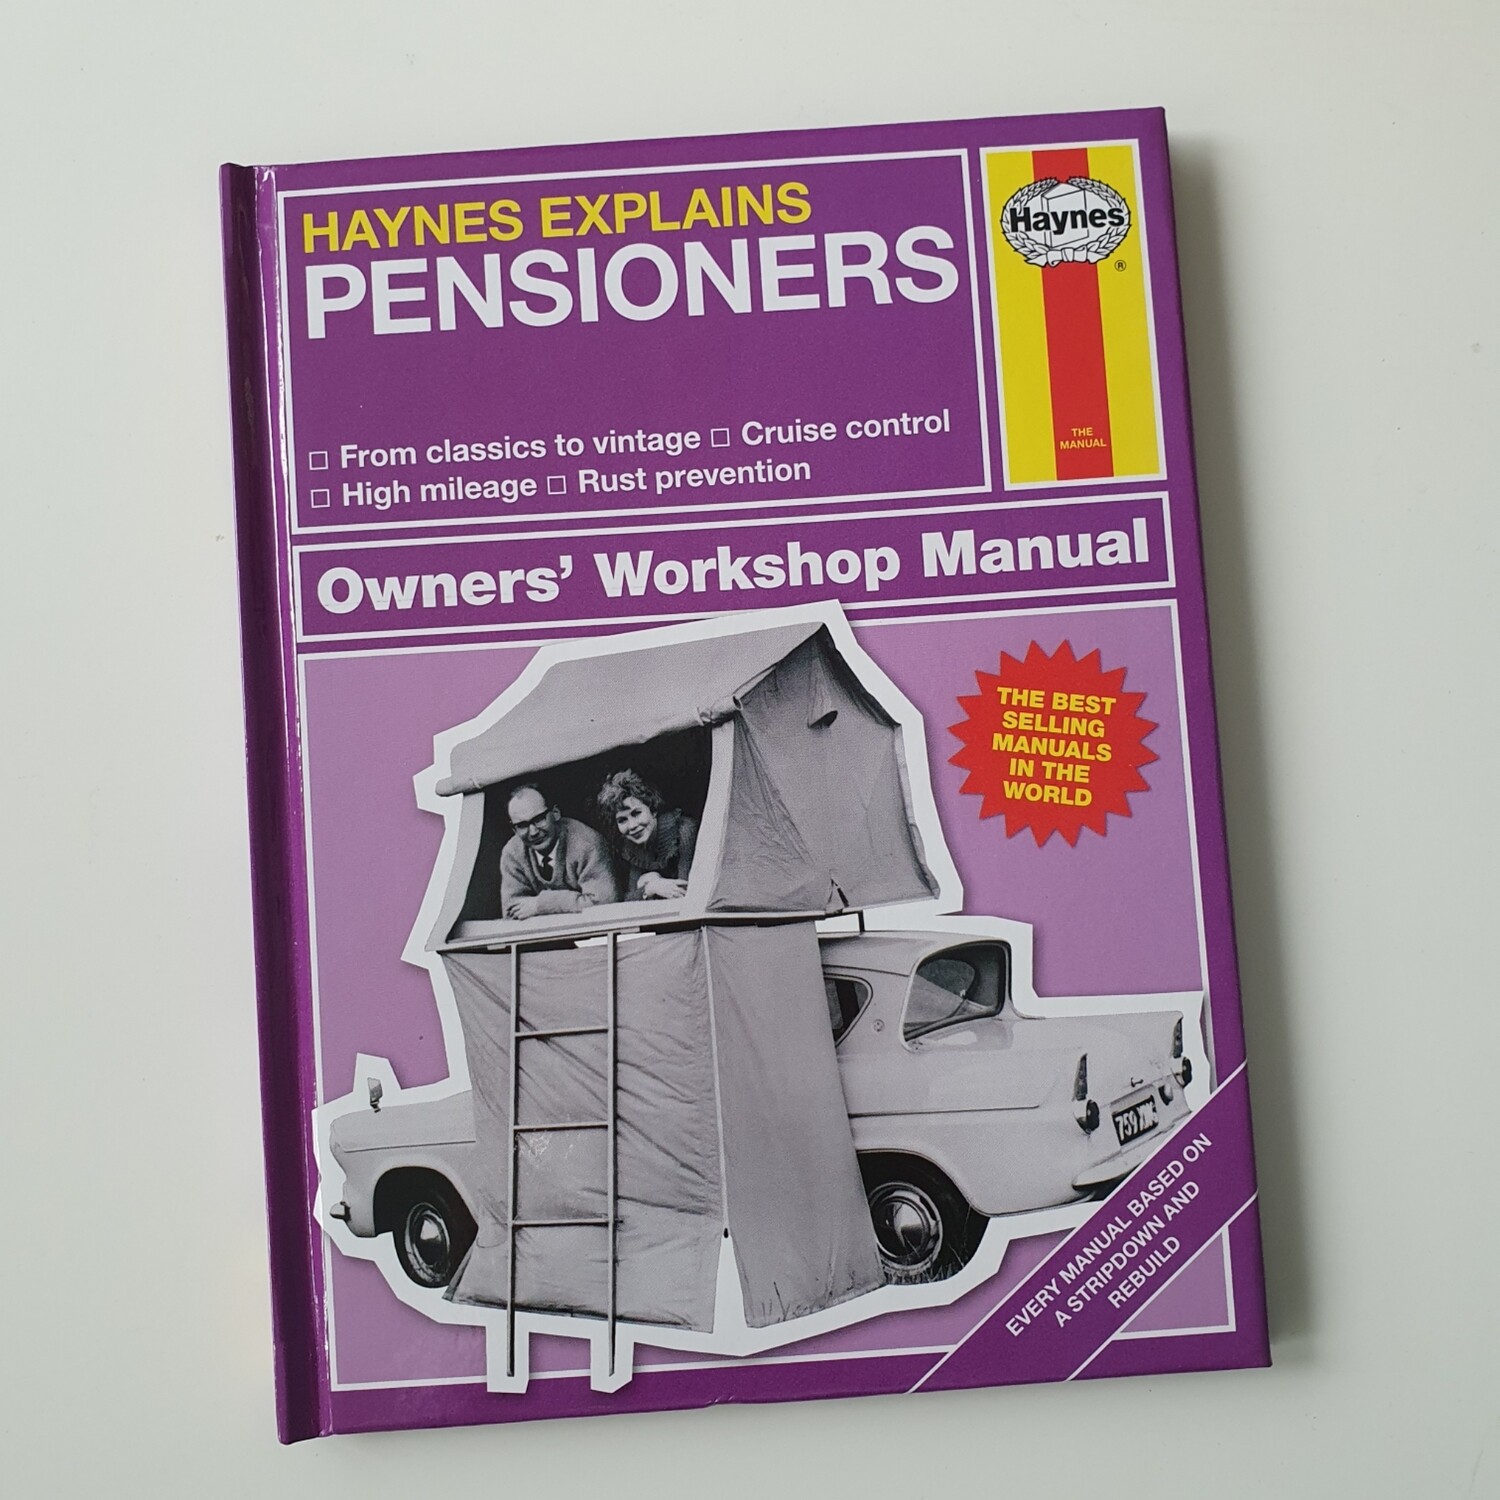 Pensioners Haynes Manual